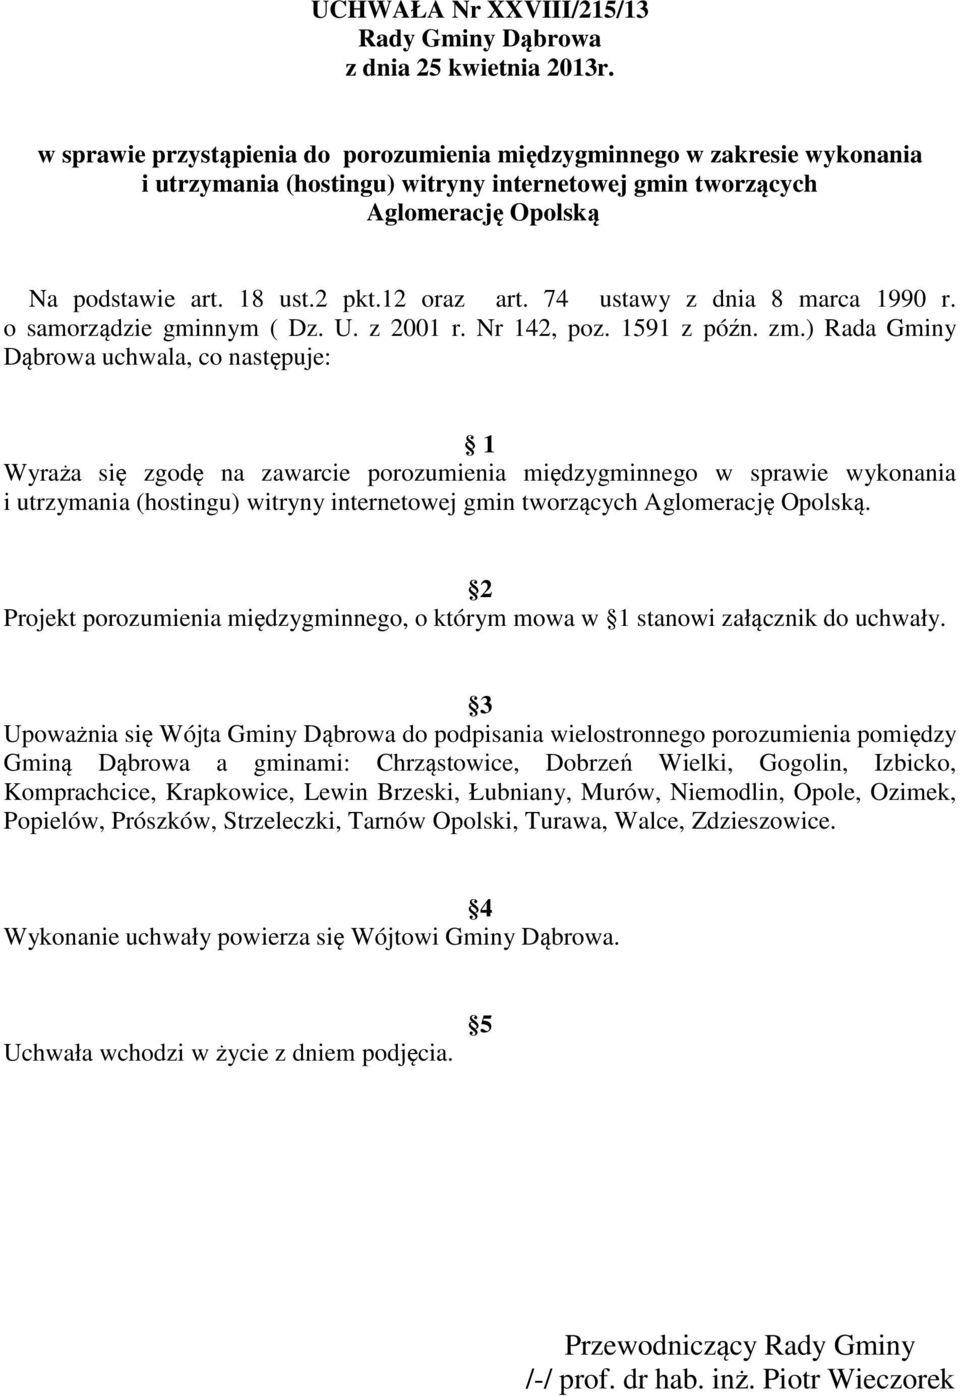 74 ustawy z dnia 8 marca 1990 r. o samorządzie gminnym ( Dz. U. z 2001 r. Nr 142, poz. 1591 z późn. zm.